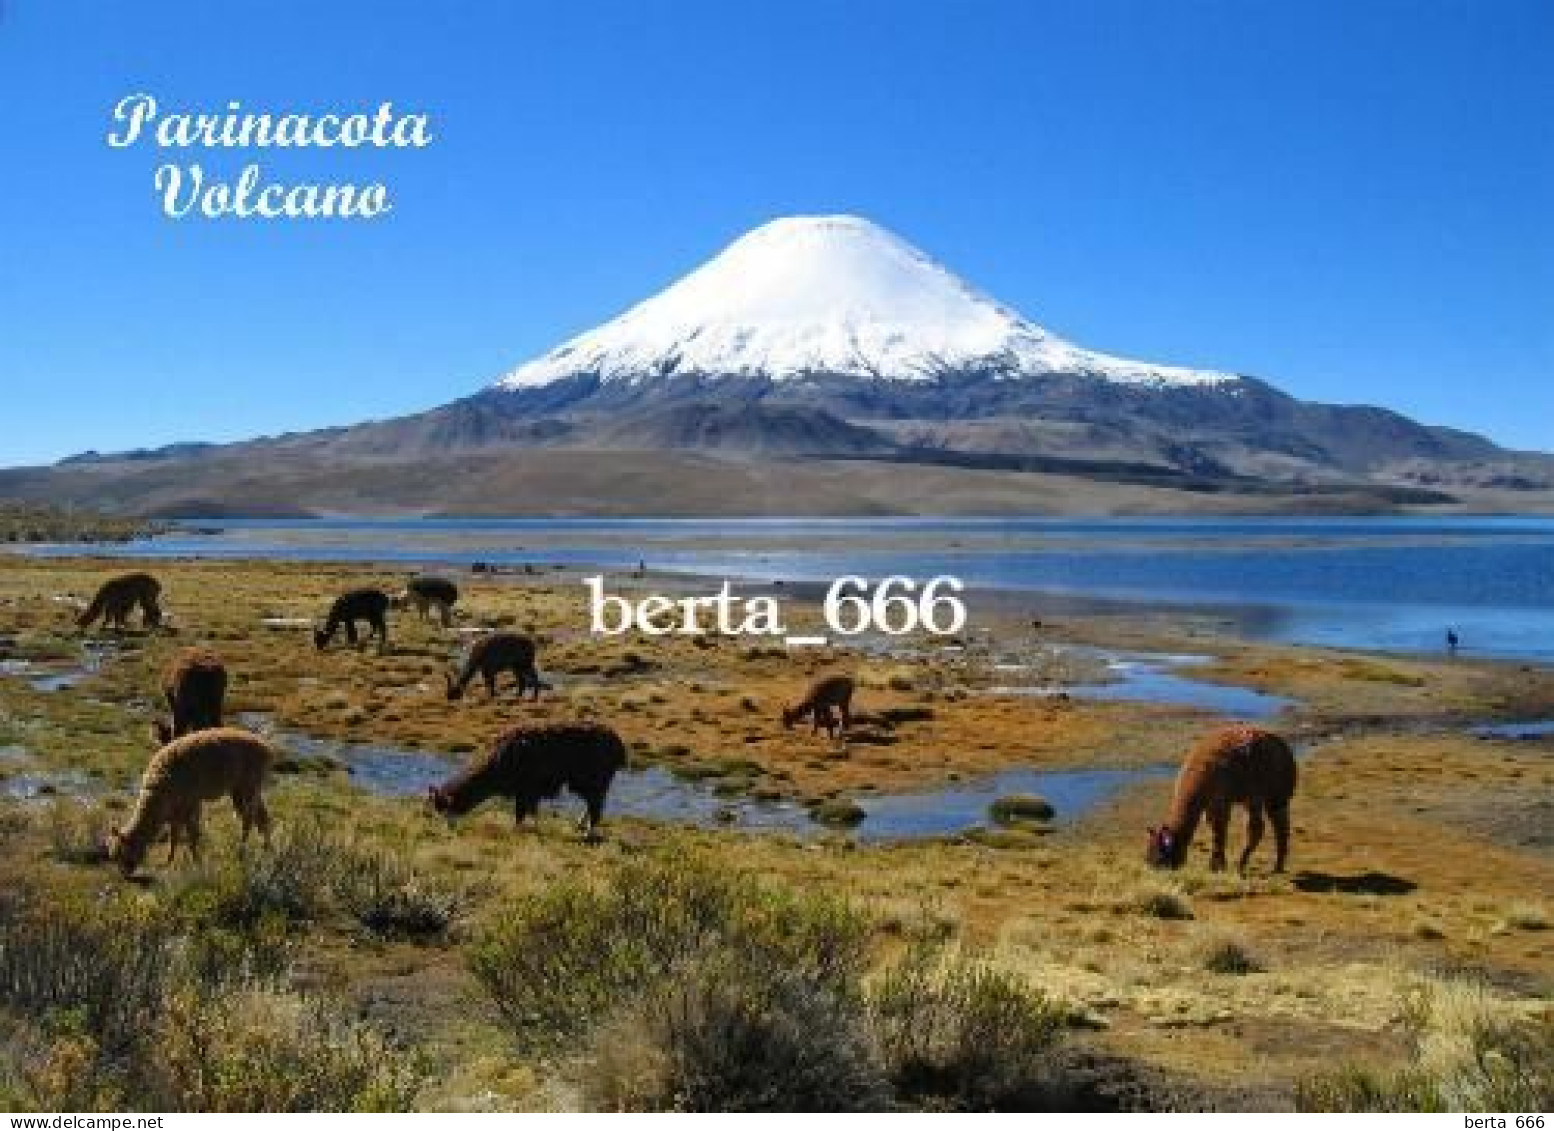 Chile Parinacota Volcano New Postcard - Chile